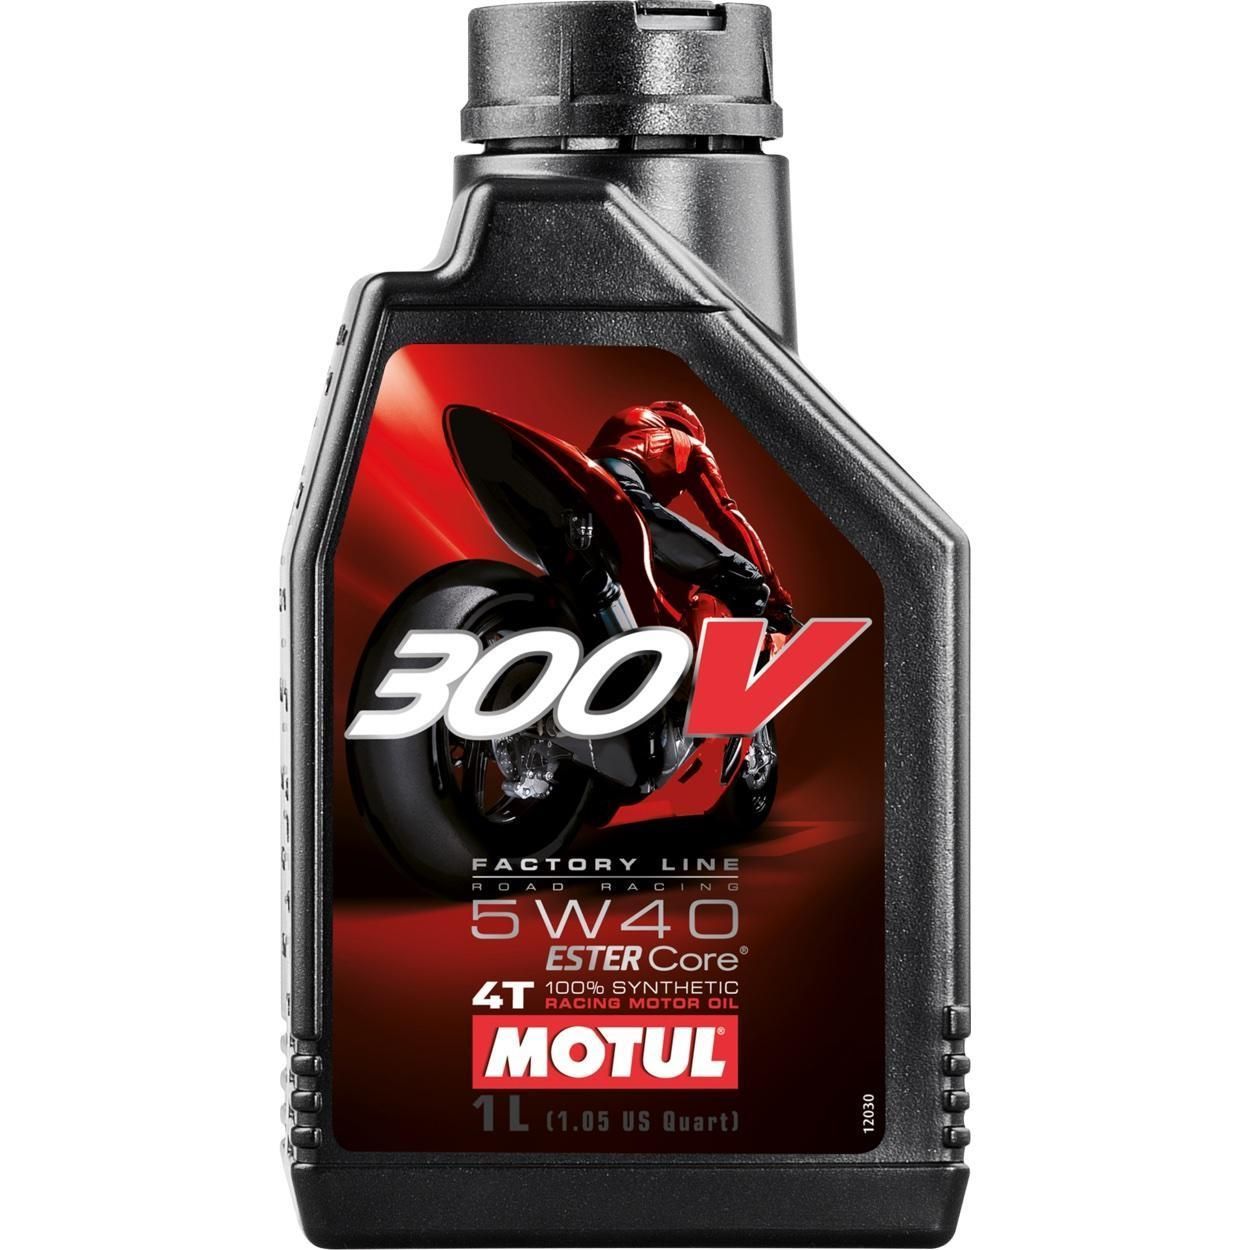 Моторное масло MOTUL 300V 4T FACTORY LINE ROAD RACING 5W-40, 1 литр 5W40 (836011 / 104112)